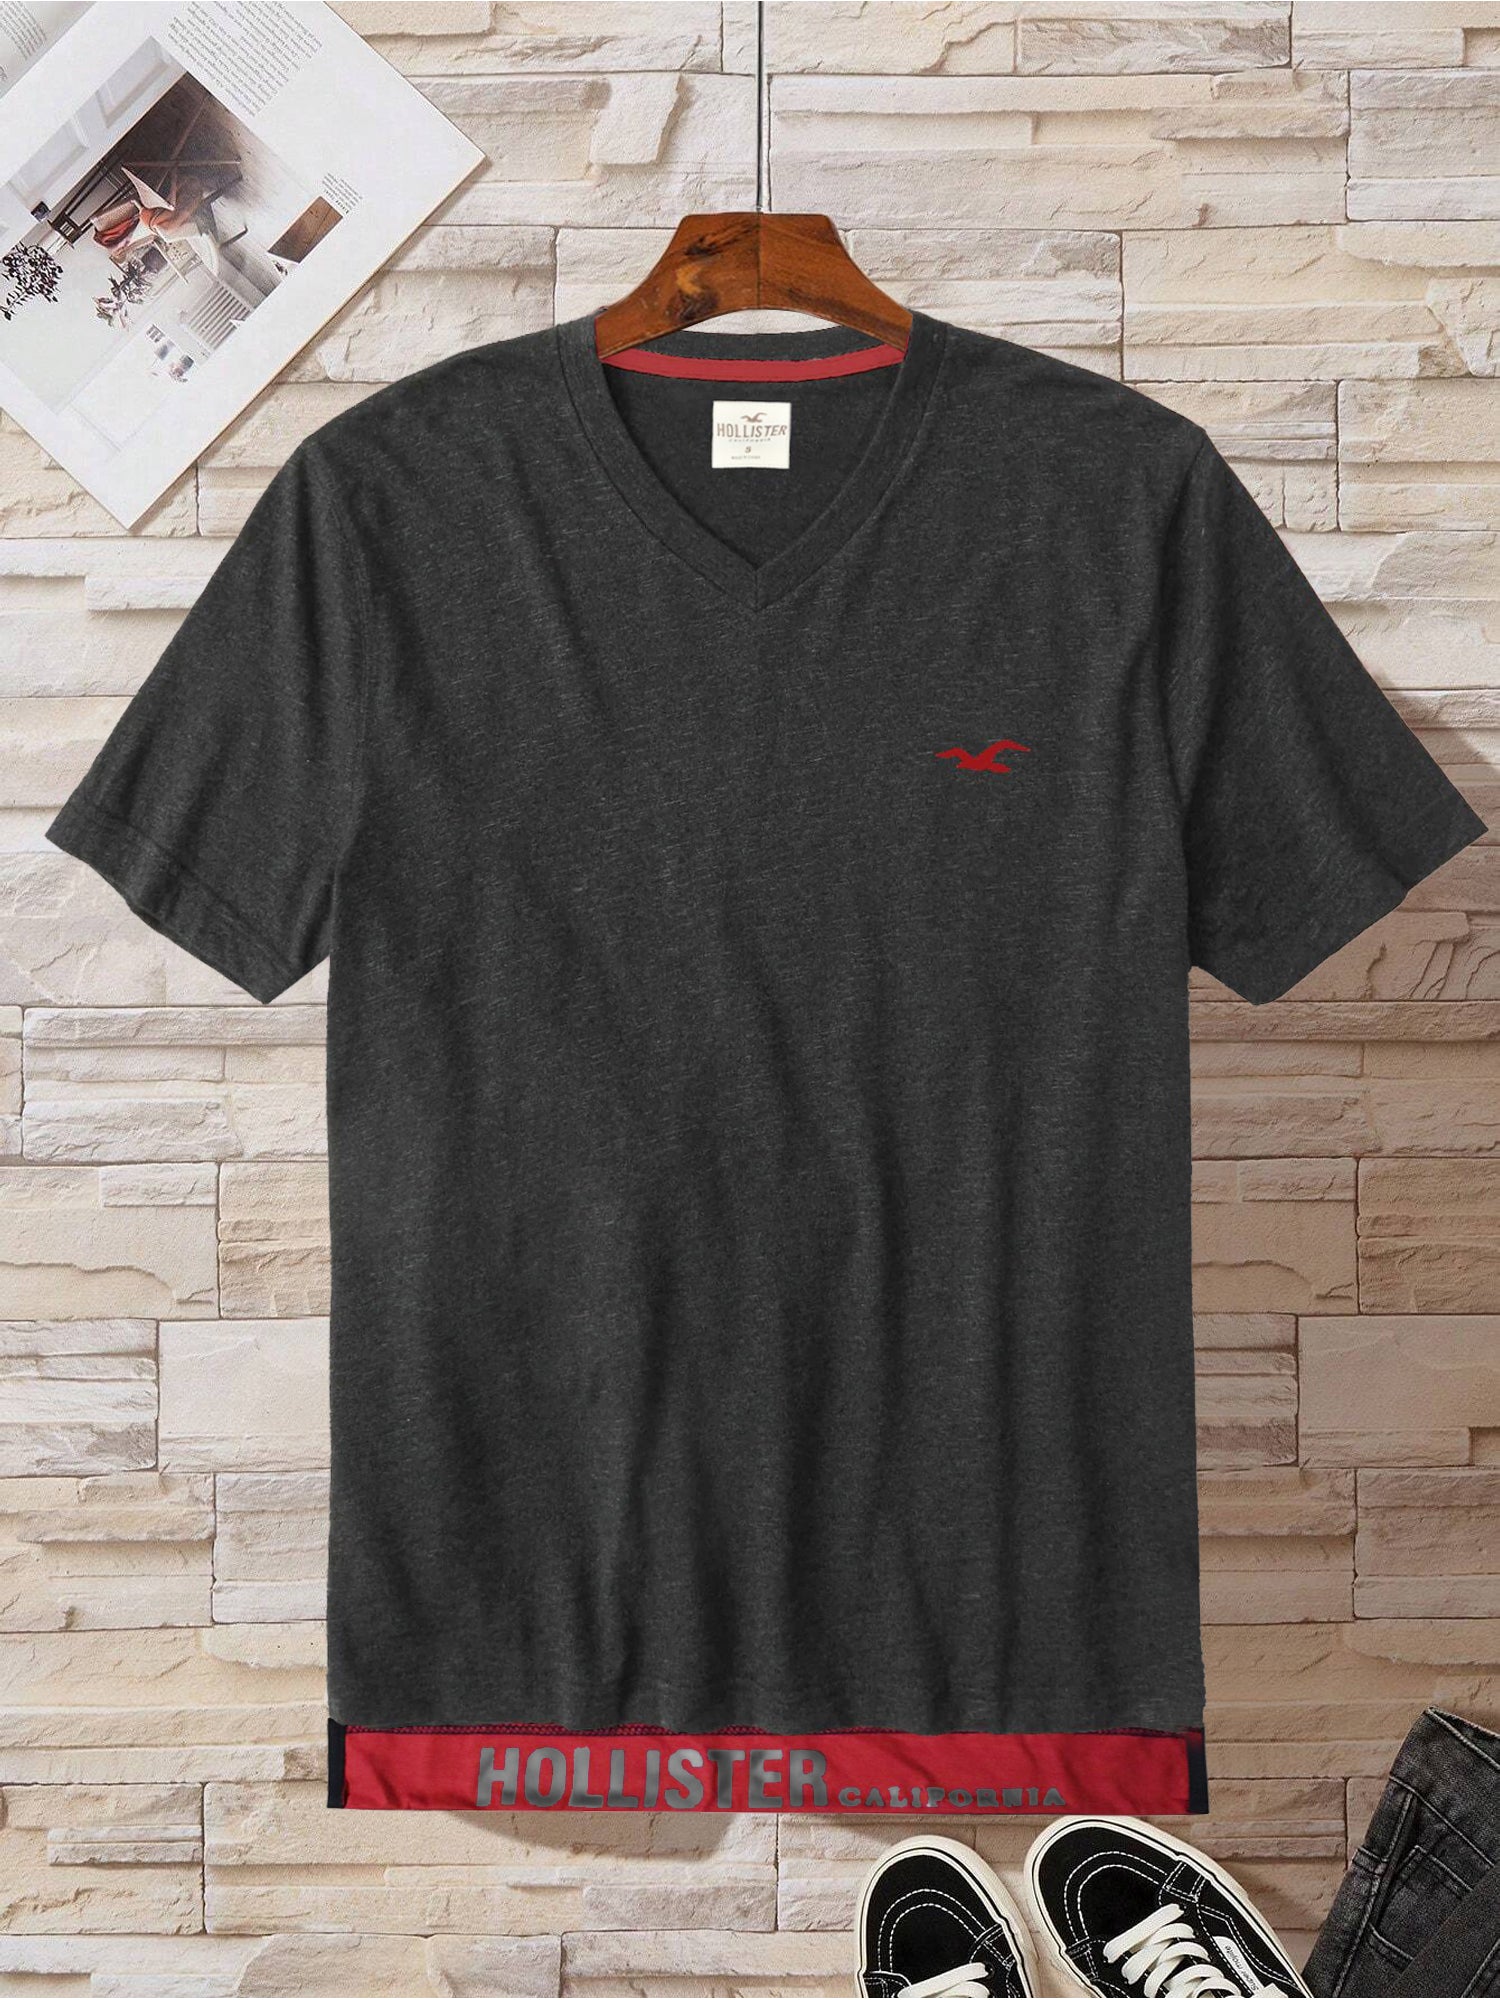 HST Single Jersey V Neck Tee Shirt For Men-Charcoal Melange-SP1901